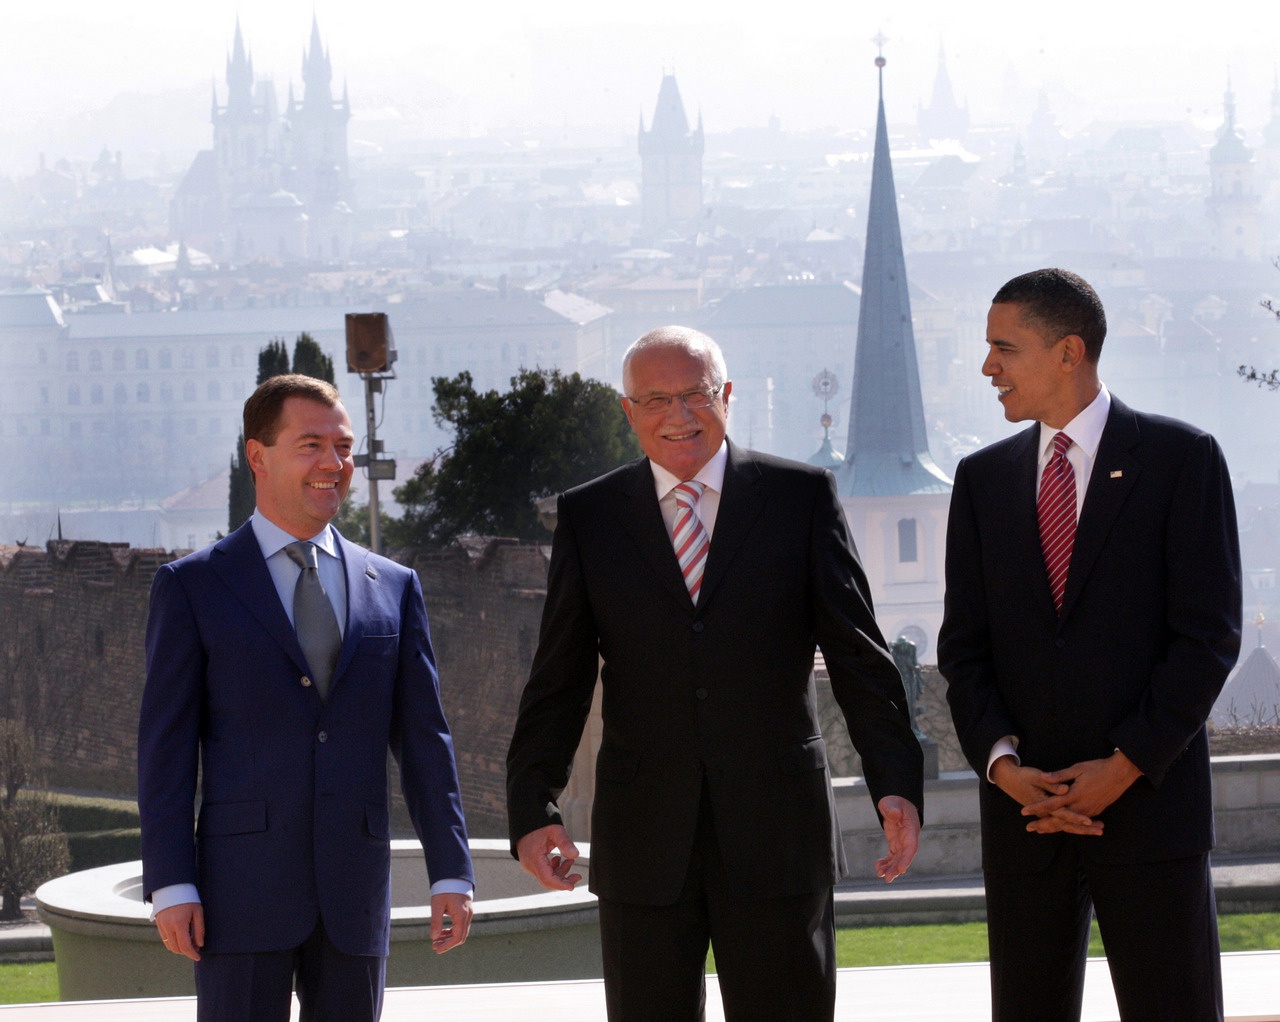 Дмитрий Медведев, Вацлав Клаус (президент Чешской Республики) и Барак Обама перед подписанием Договора СНВ-3, 8 апреля 2010 г.